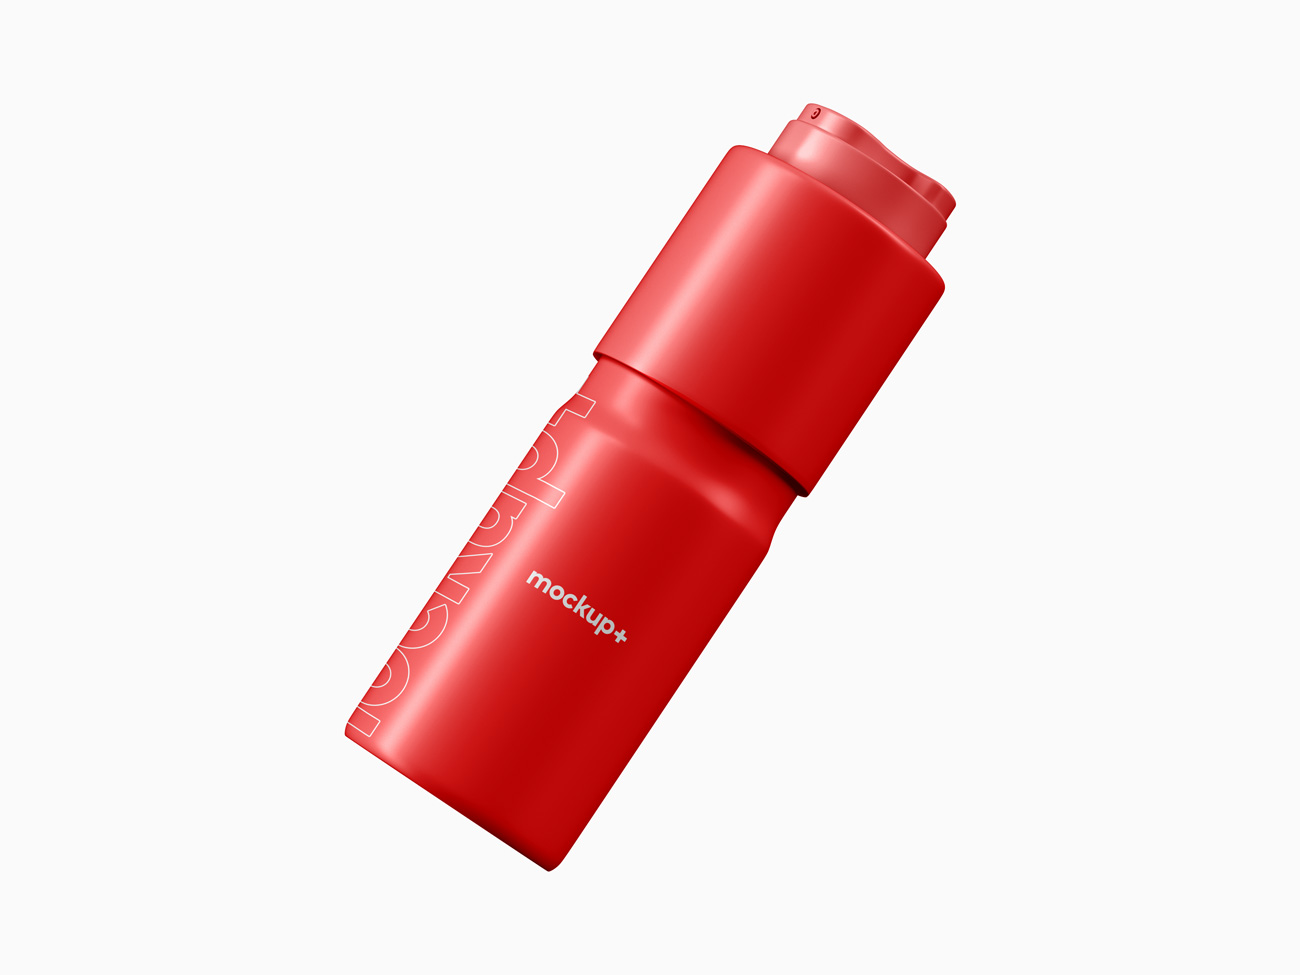 除臭喷雾瓶产品包装设计样机贴图PSD模板 Deodorant